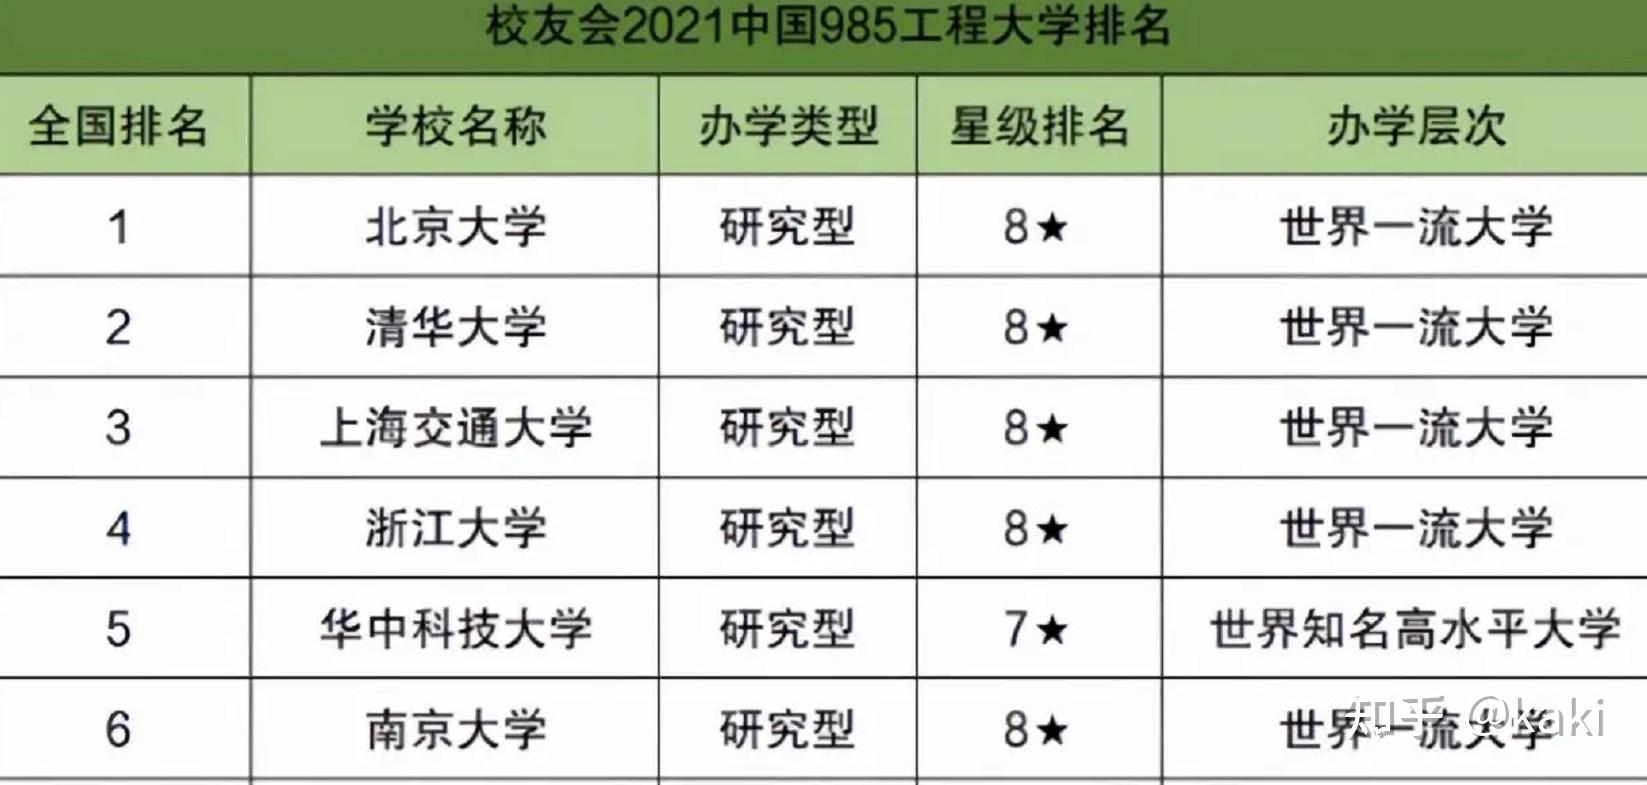 并列亚洲第一的好成绩,此次的985高校排名北京大学荣登榜首,实至名归